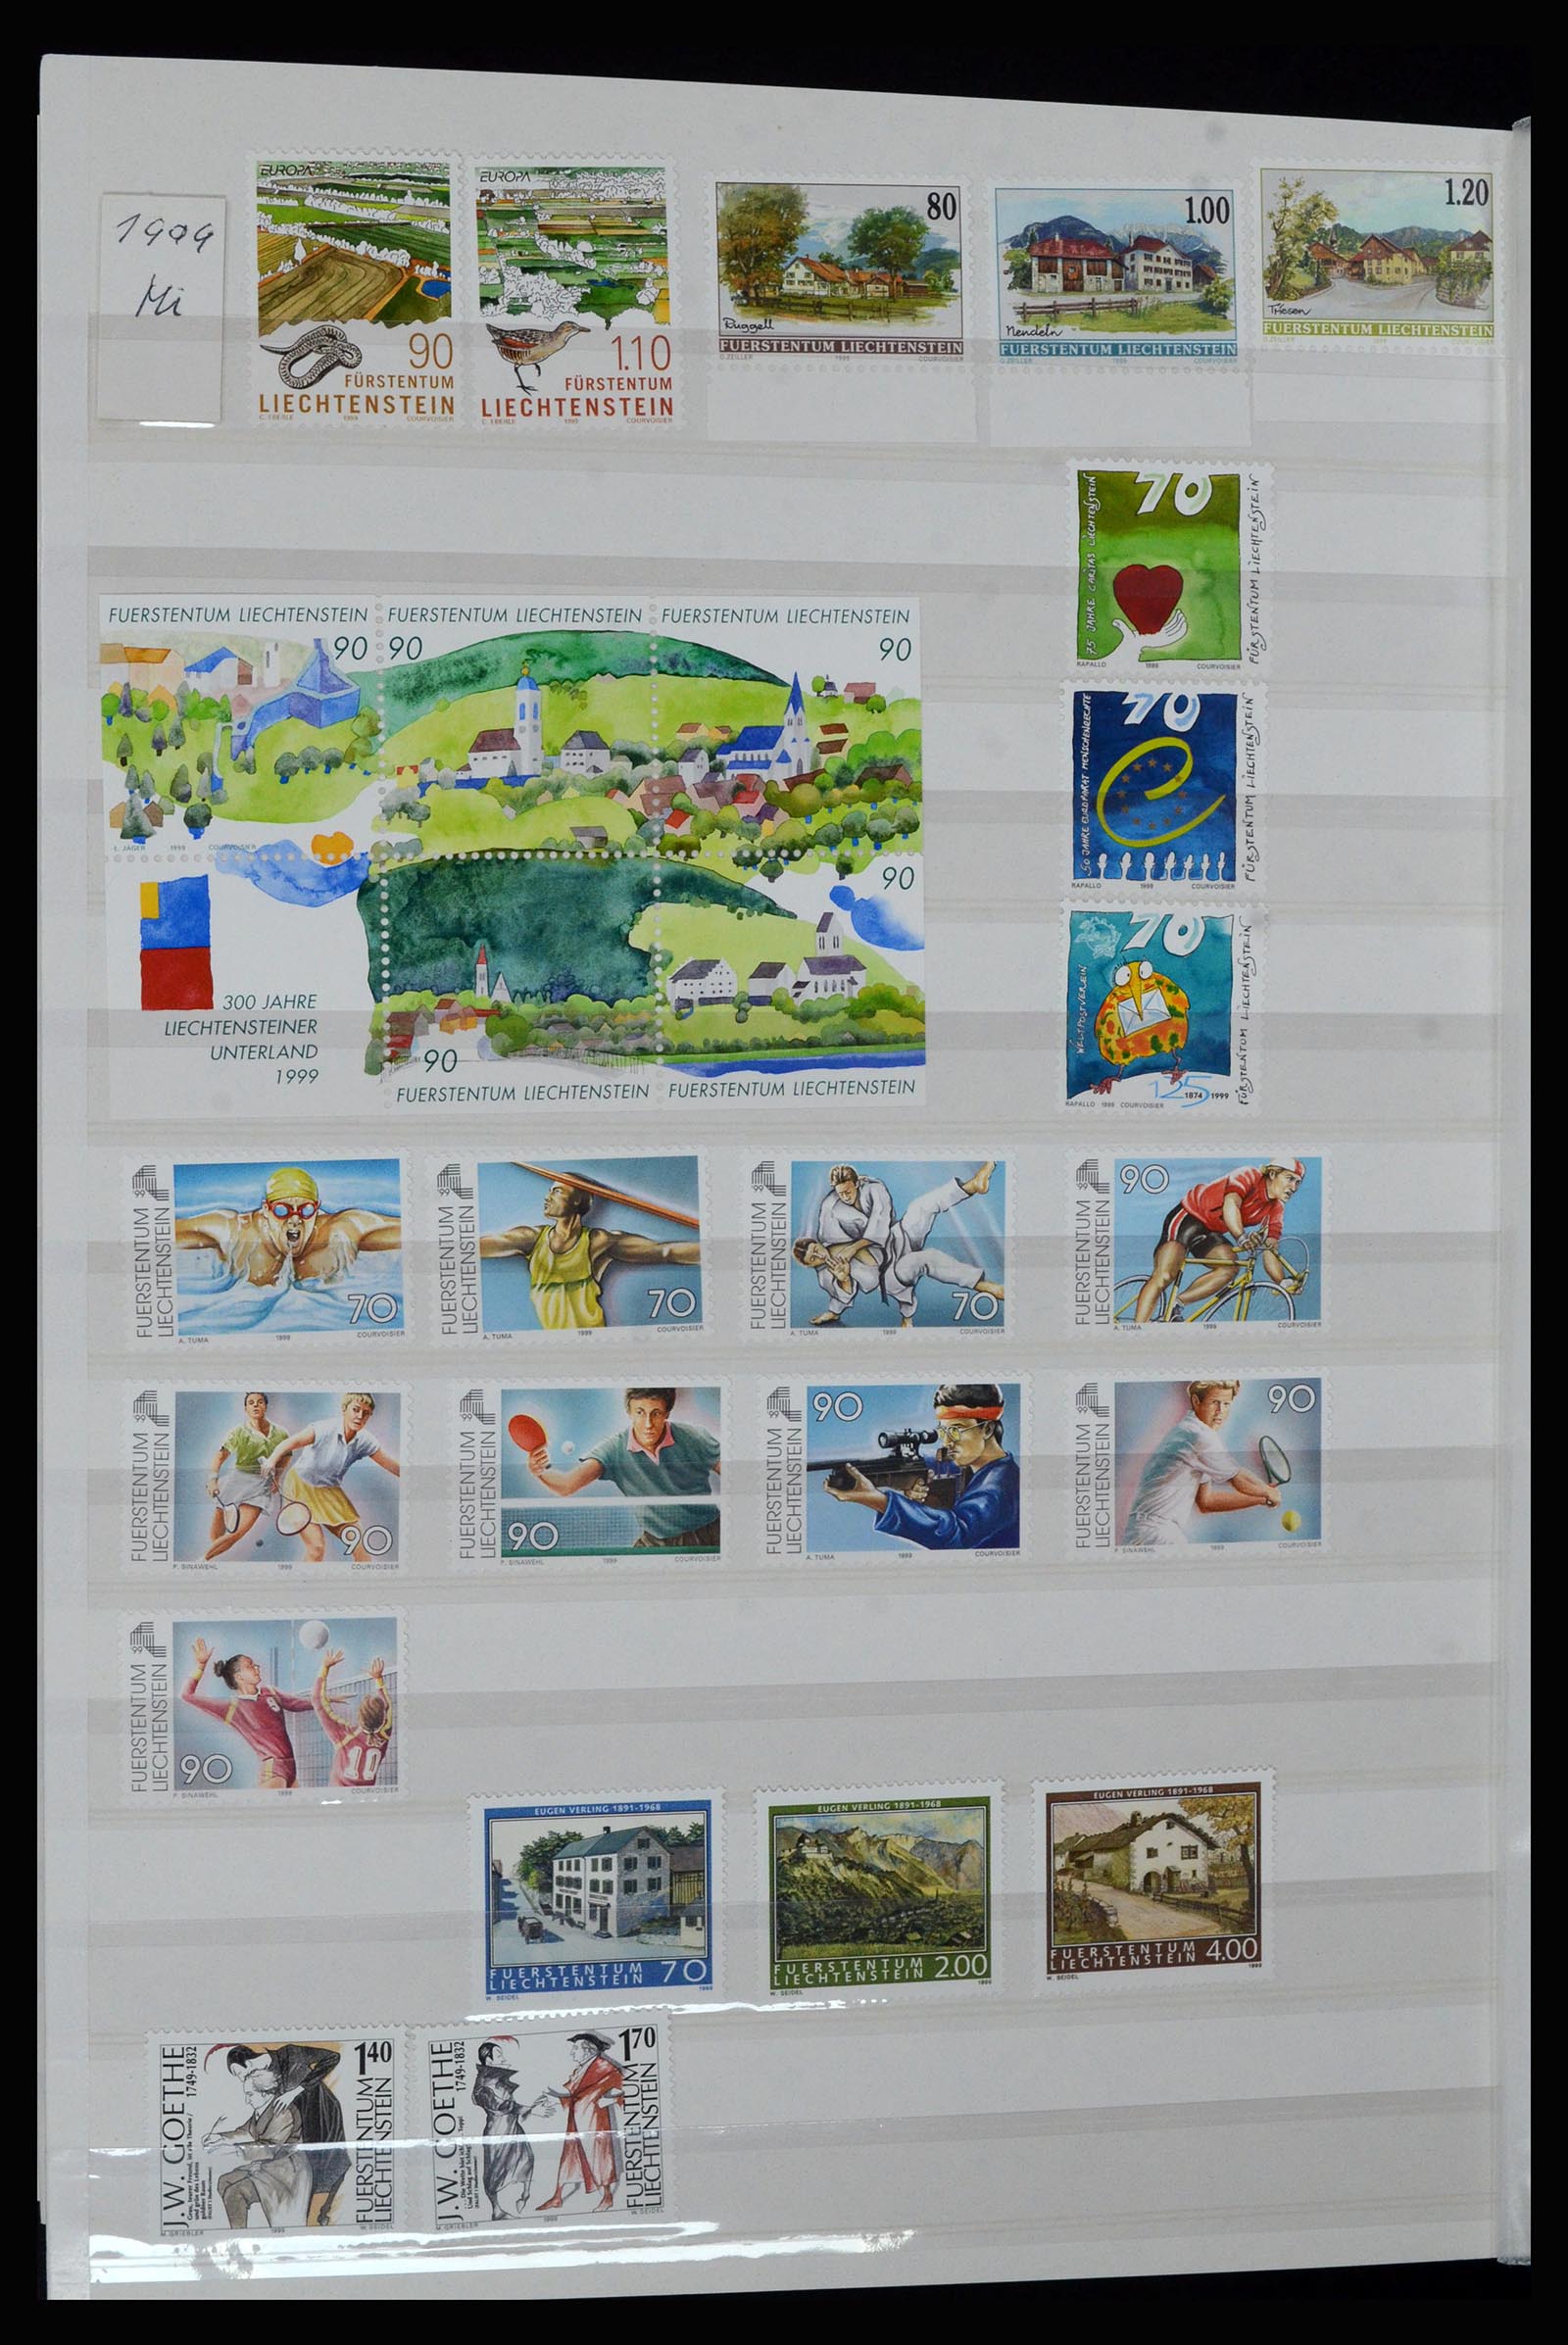 36899 051 - Stamp collection 36899 Liechtenstein 1930-2005.